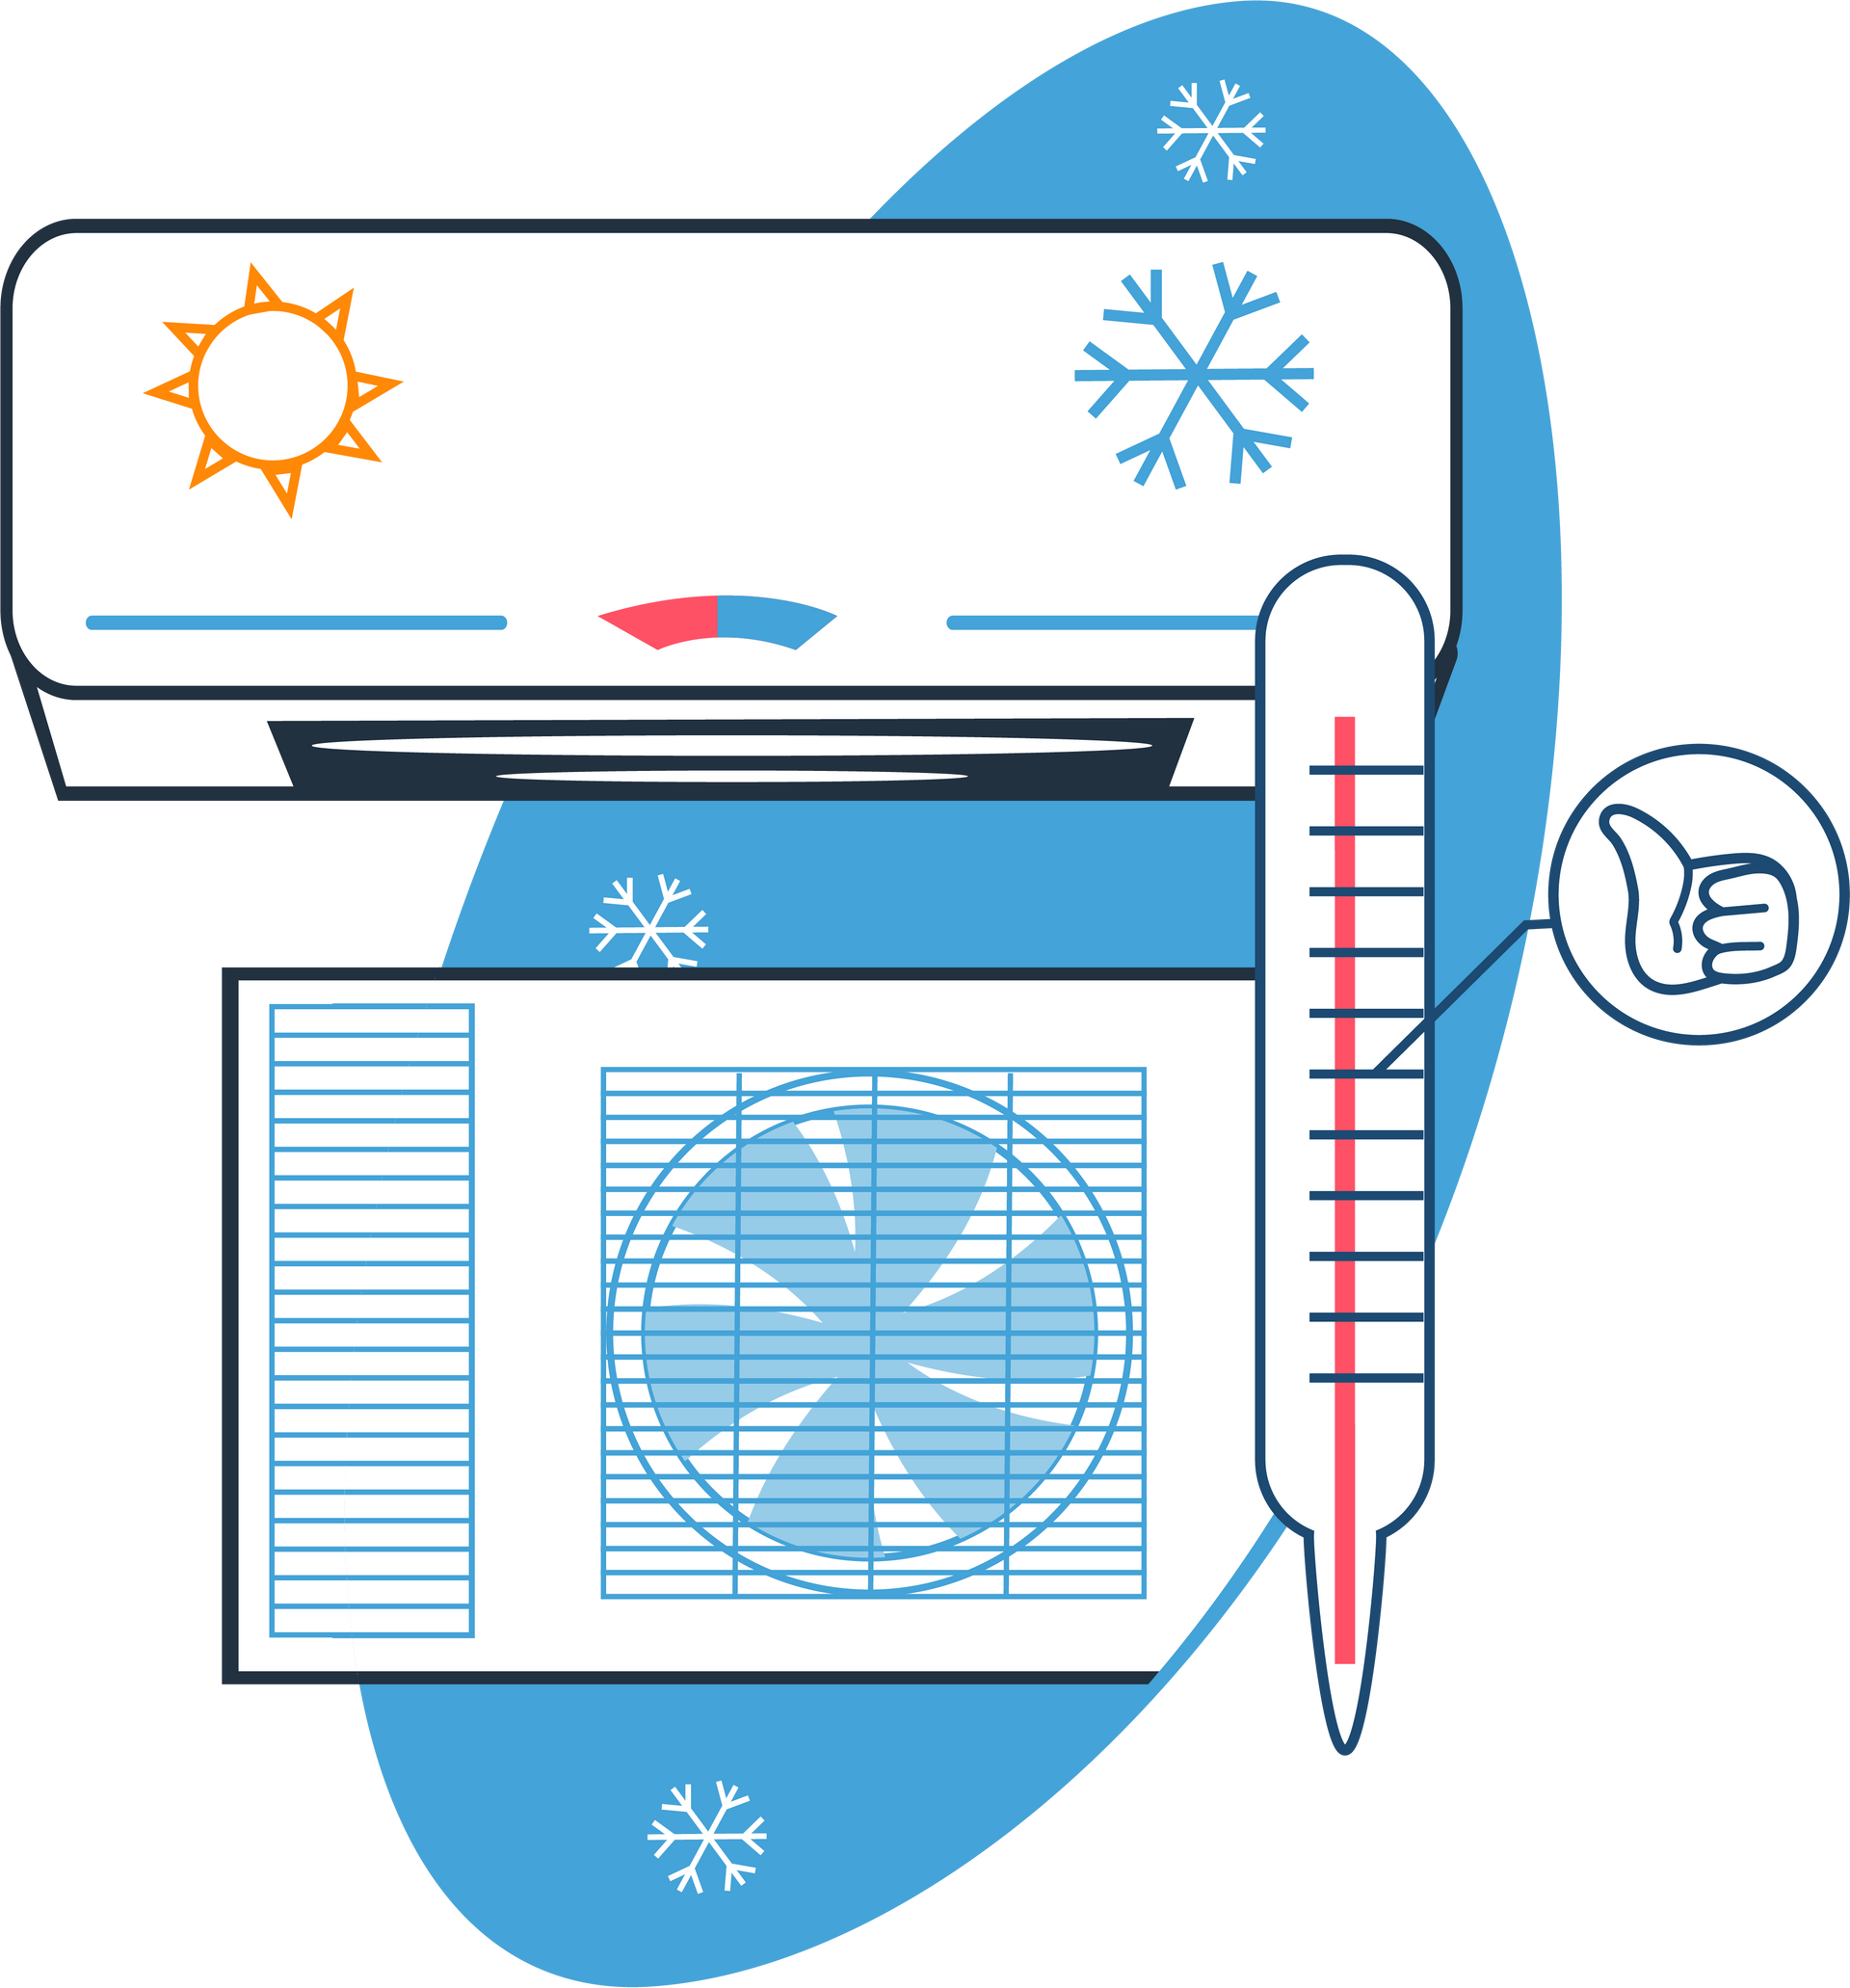 Systèmes de chauffage et climatisation en dessin - Page Chauffe-eau